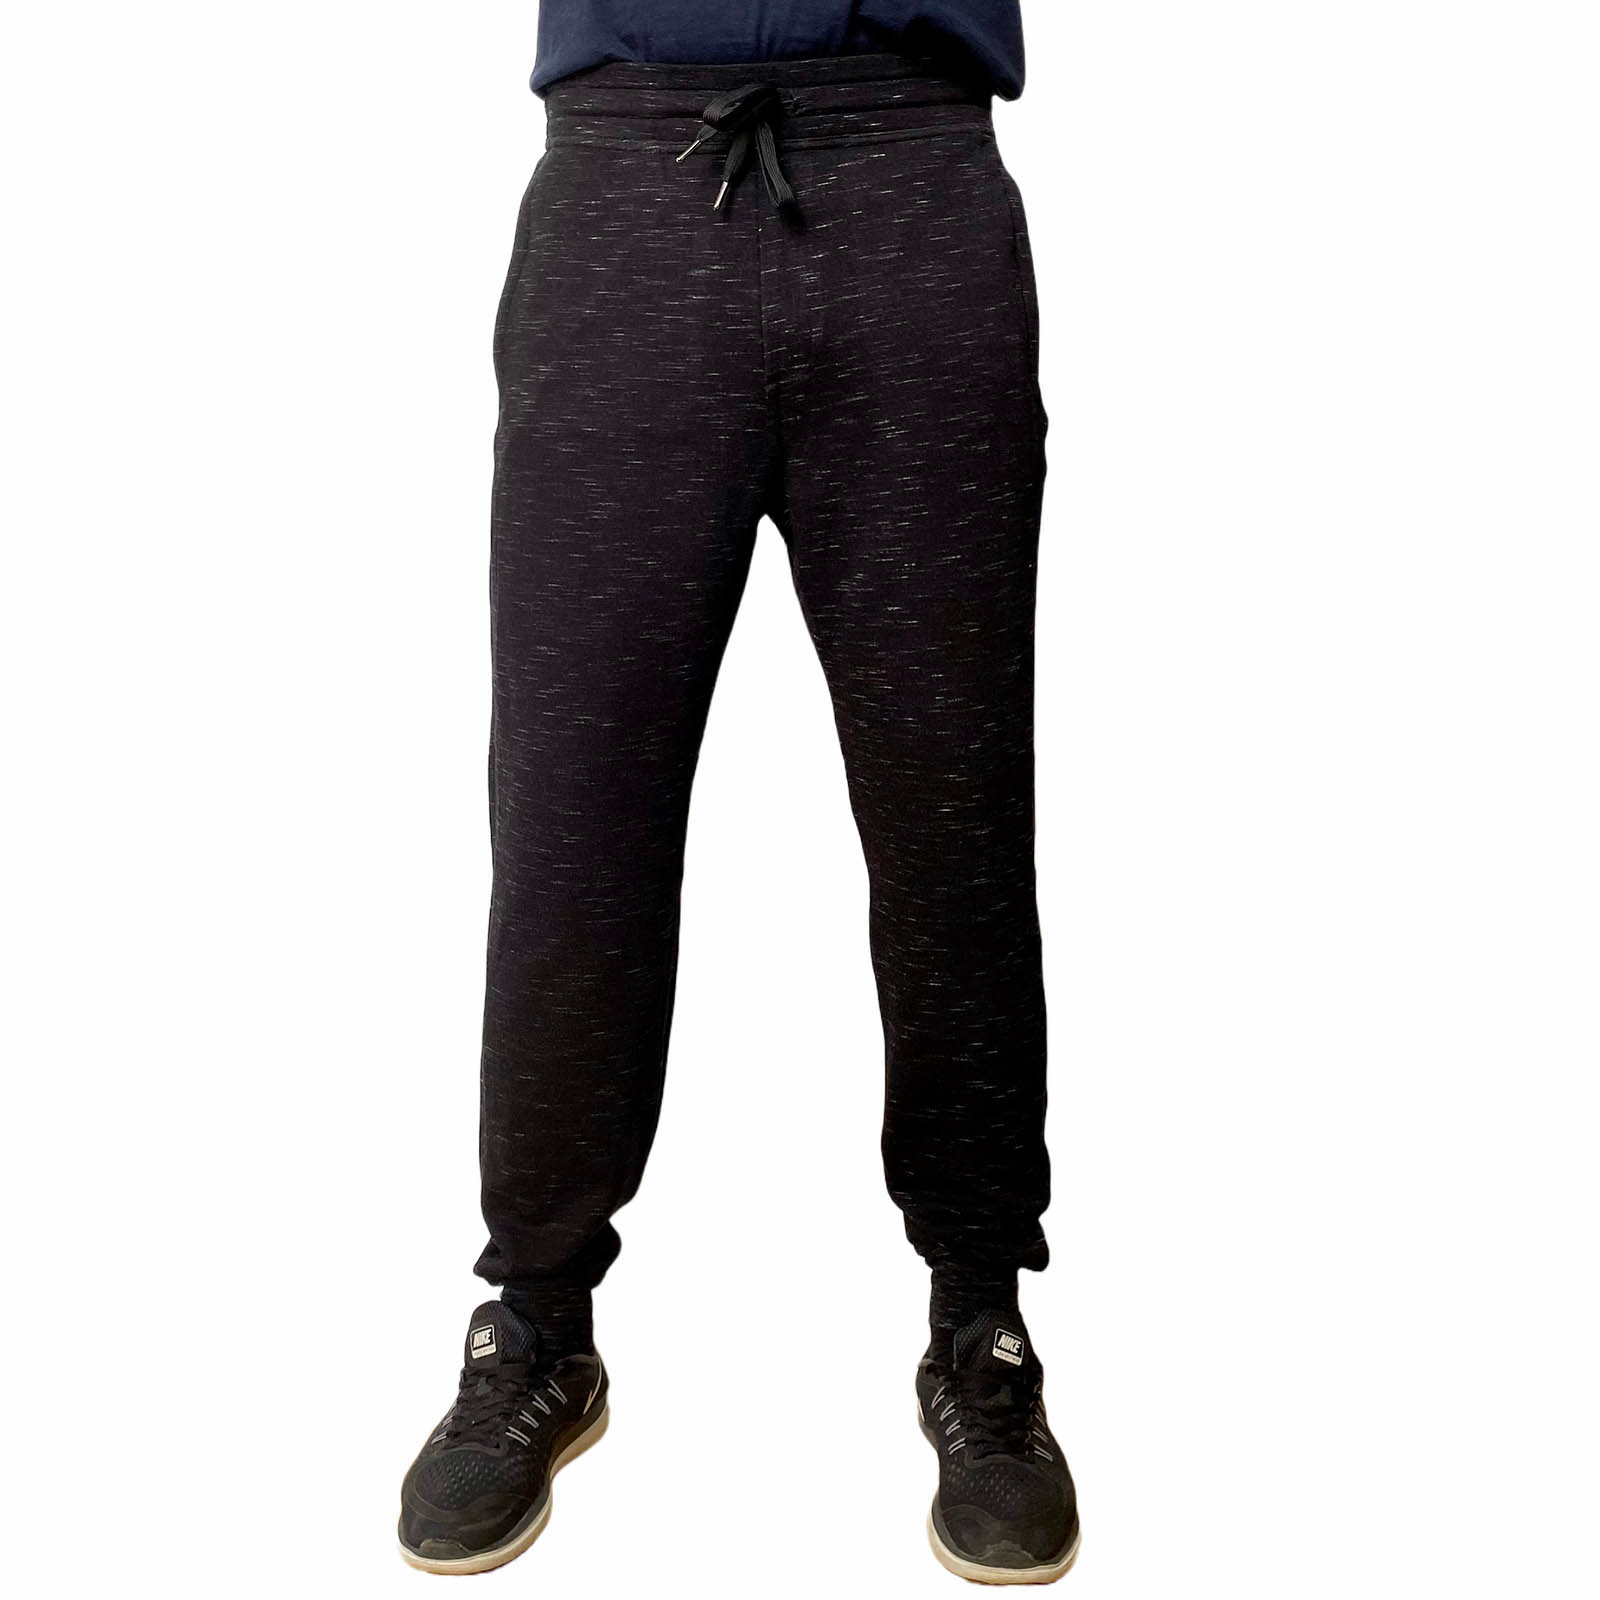 Купить в интернет магазине фирменные мужские штаны